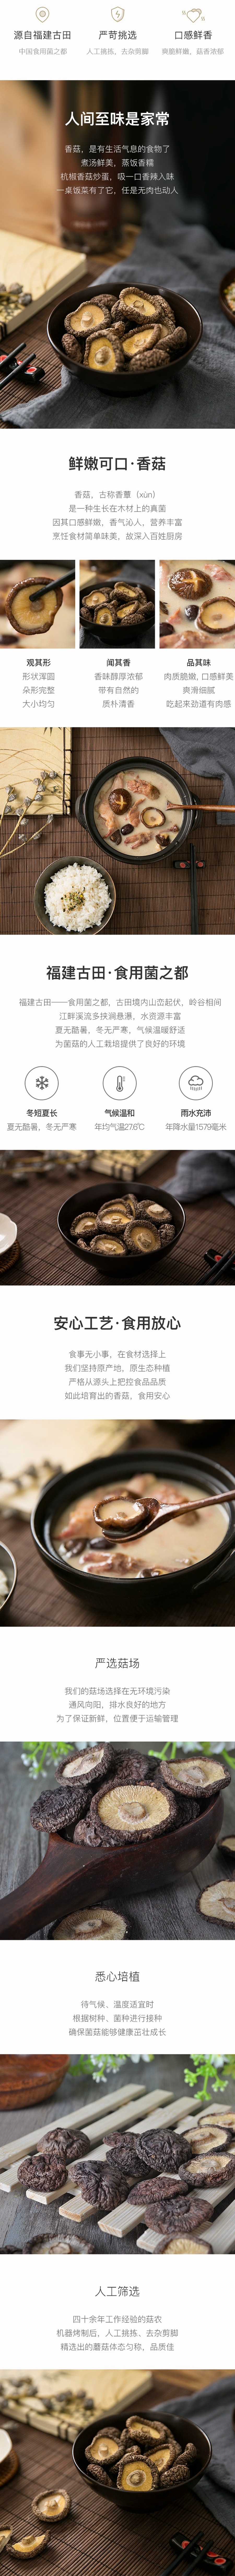 【中国直邮】网易严选 香菇 110克 (1罐装) 福建古田特产 干货厚实 蘑菇食材炖汤